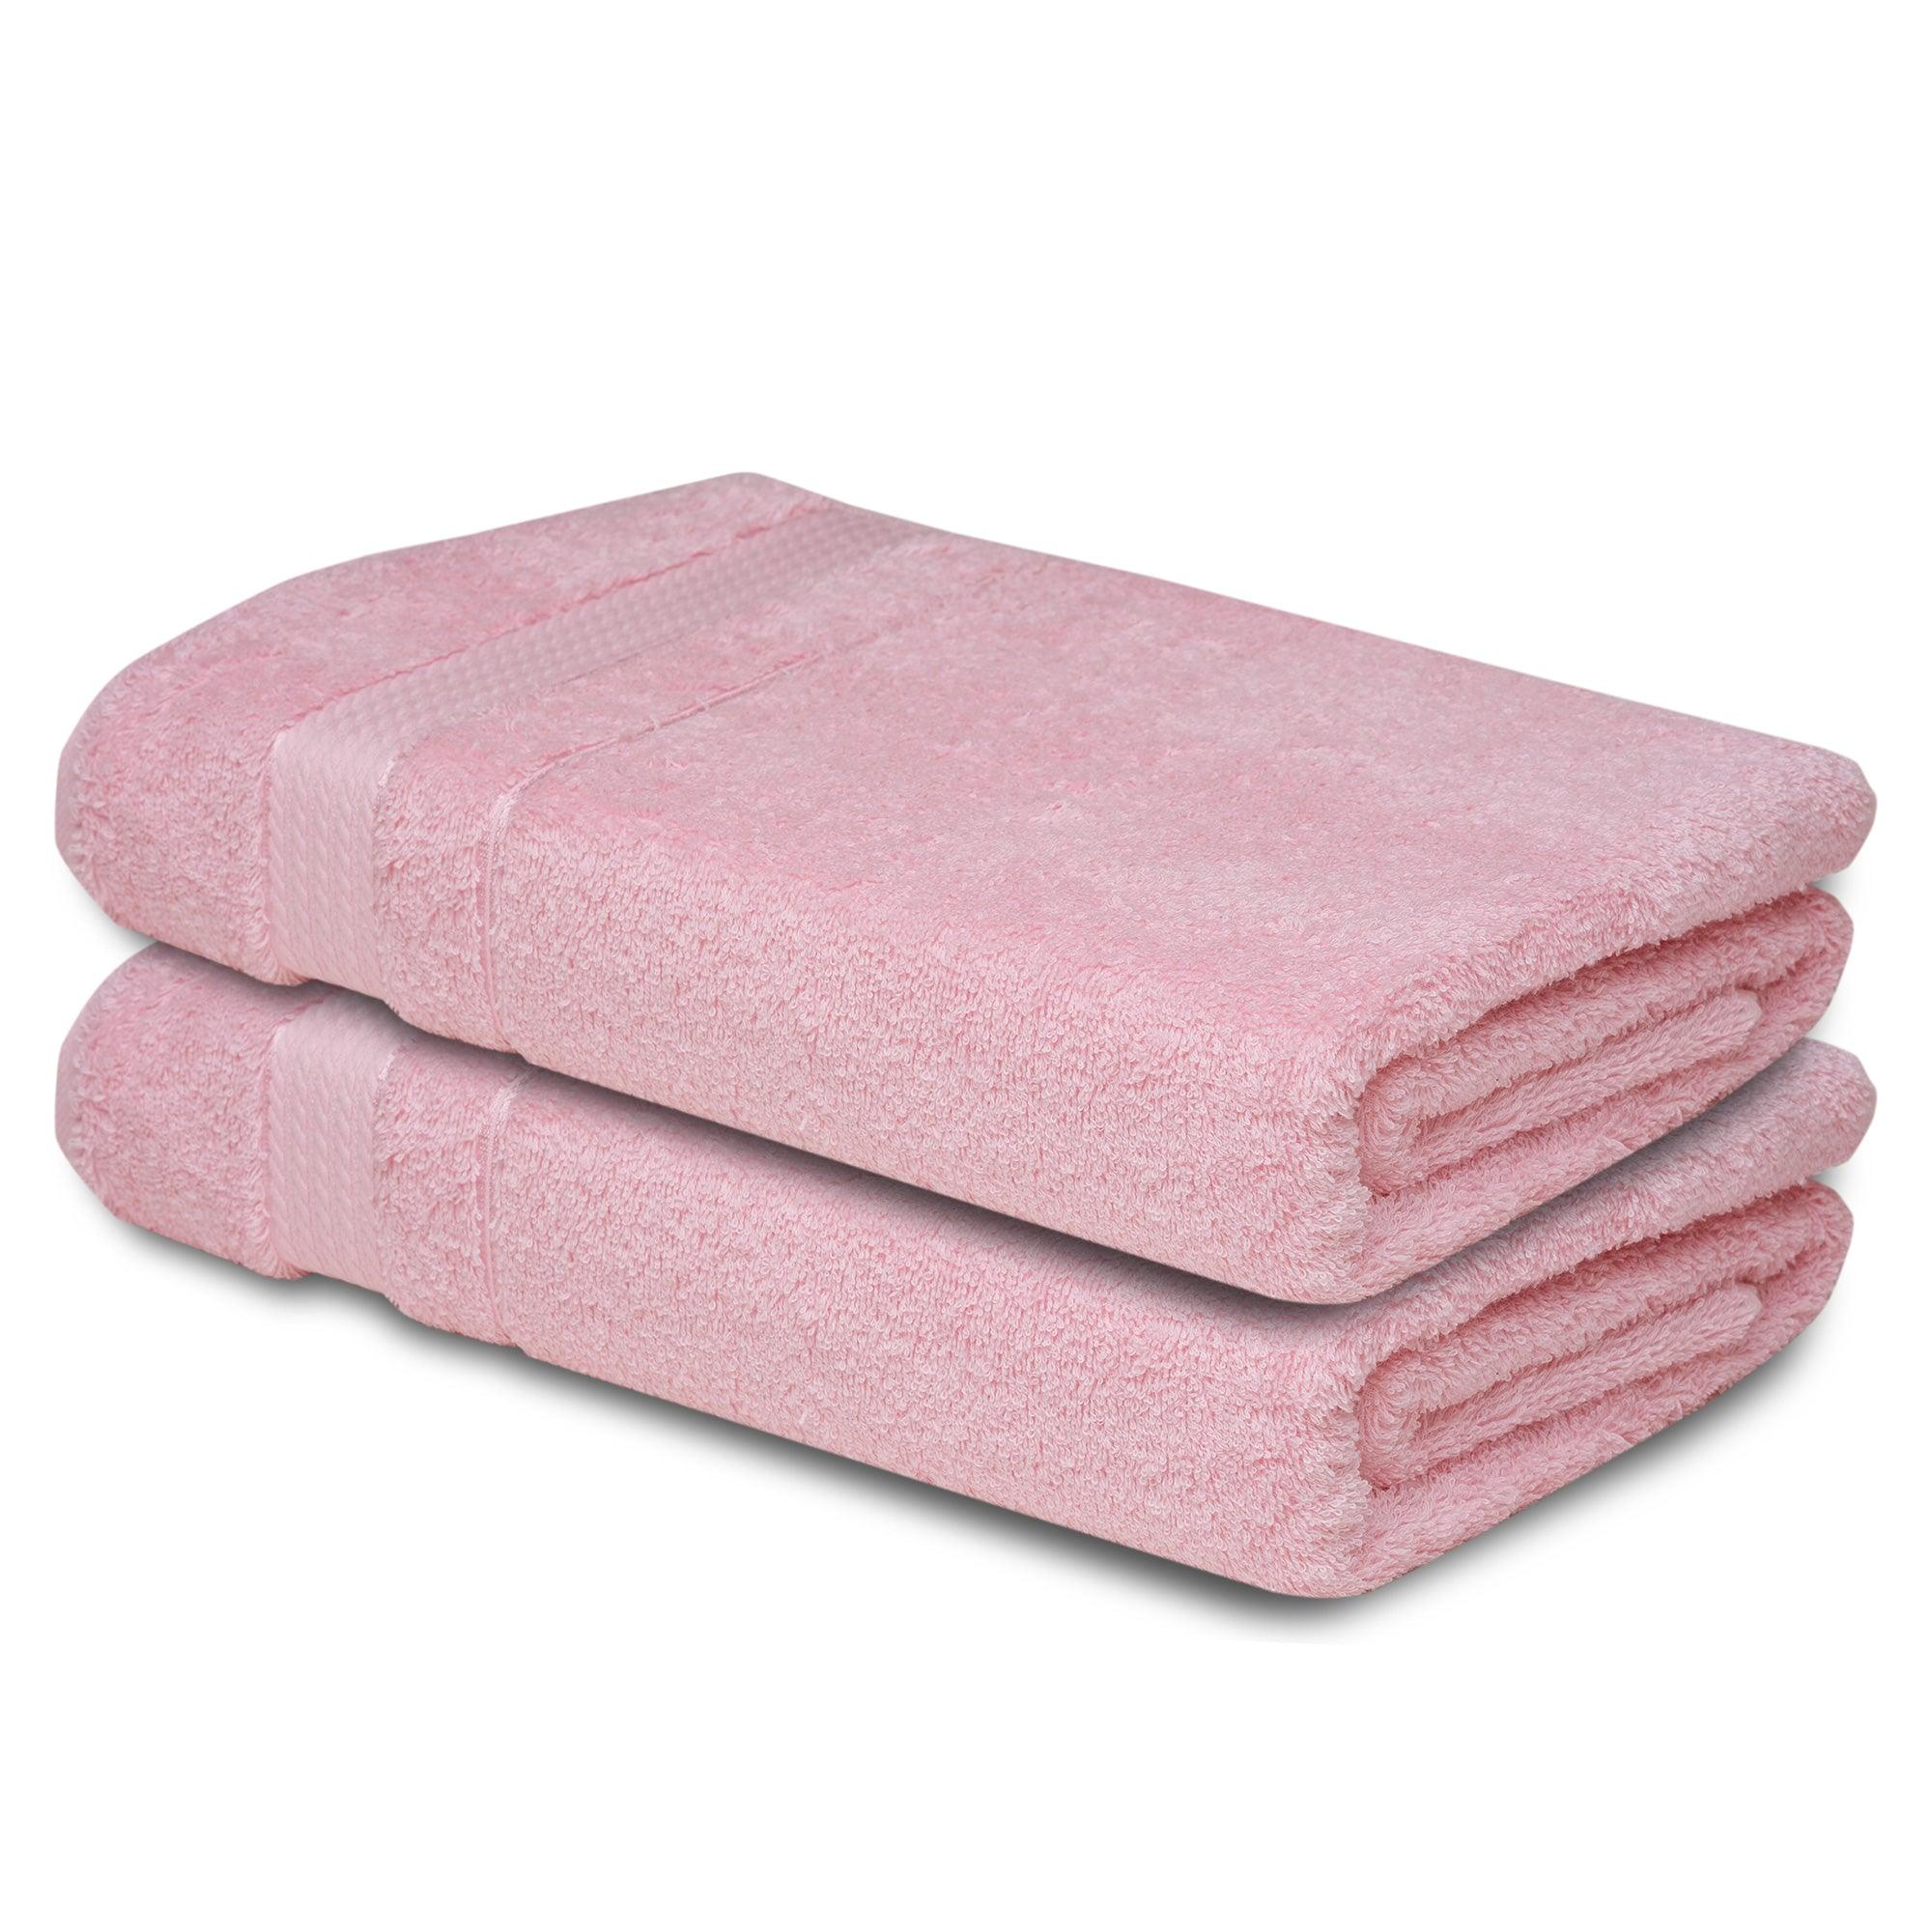 https://melissalinen.com/cdn/shop/products/2-hand-towel-light-pink-1.jpg?v=1694716566